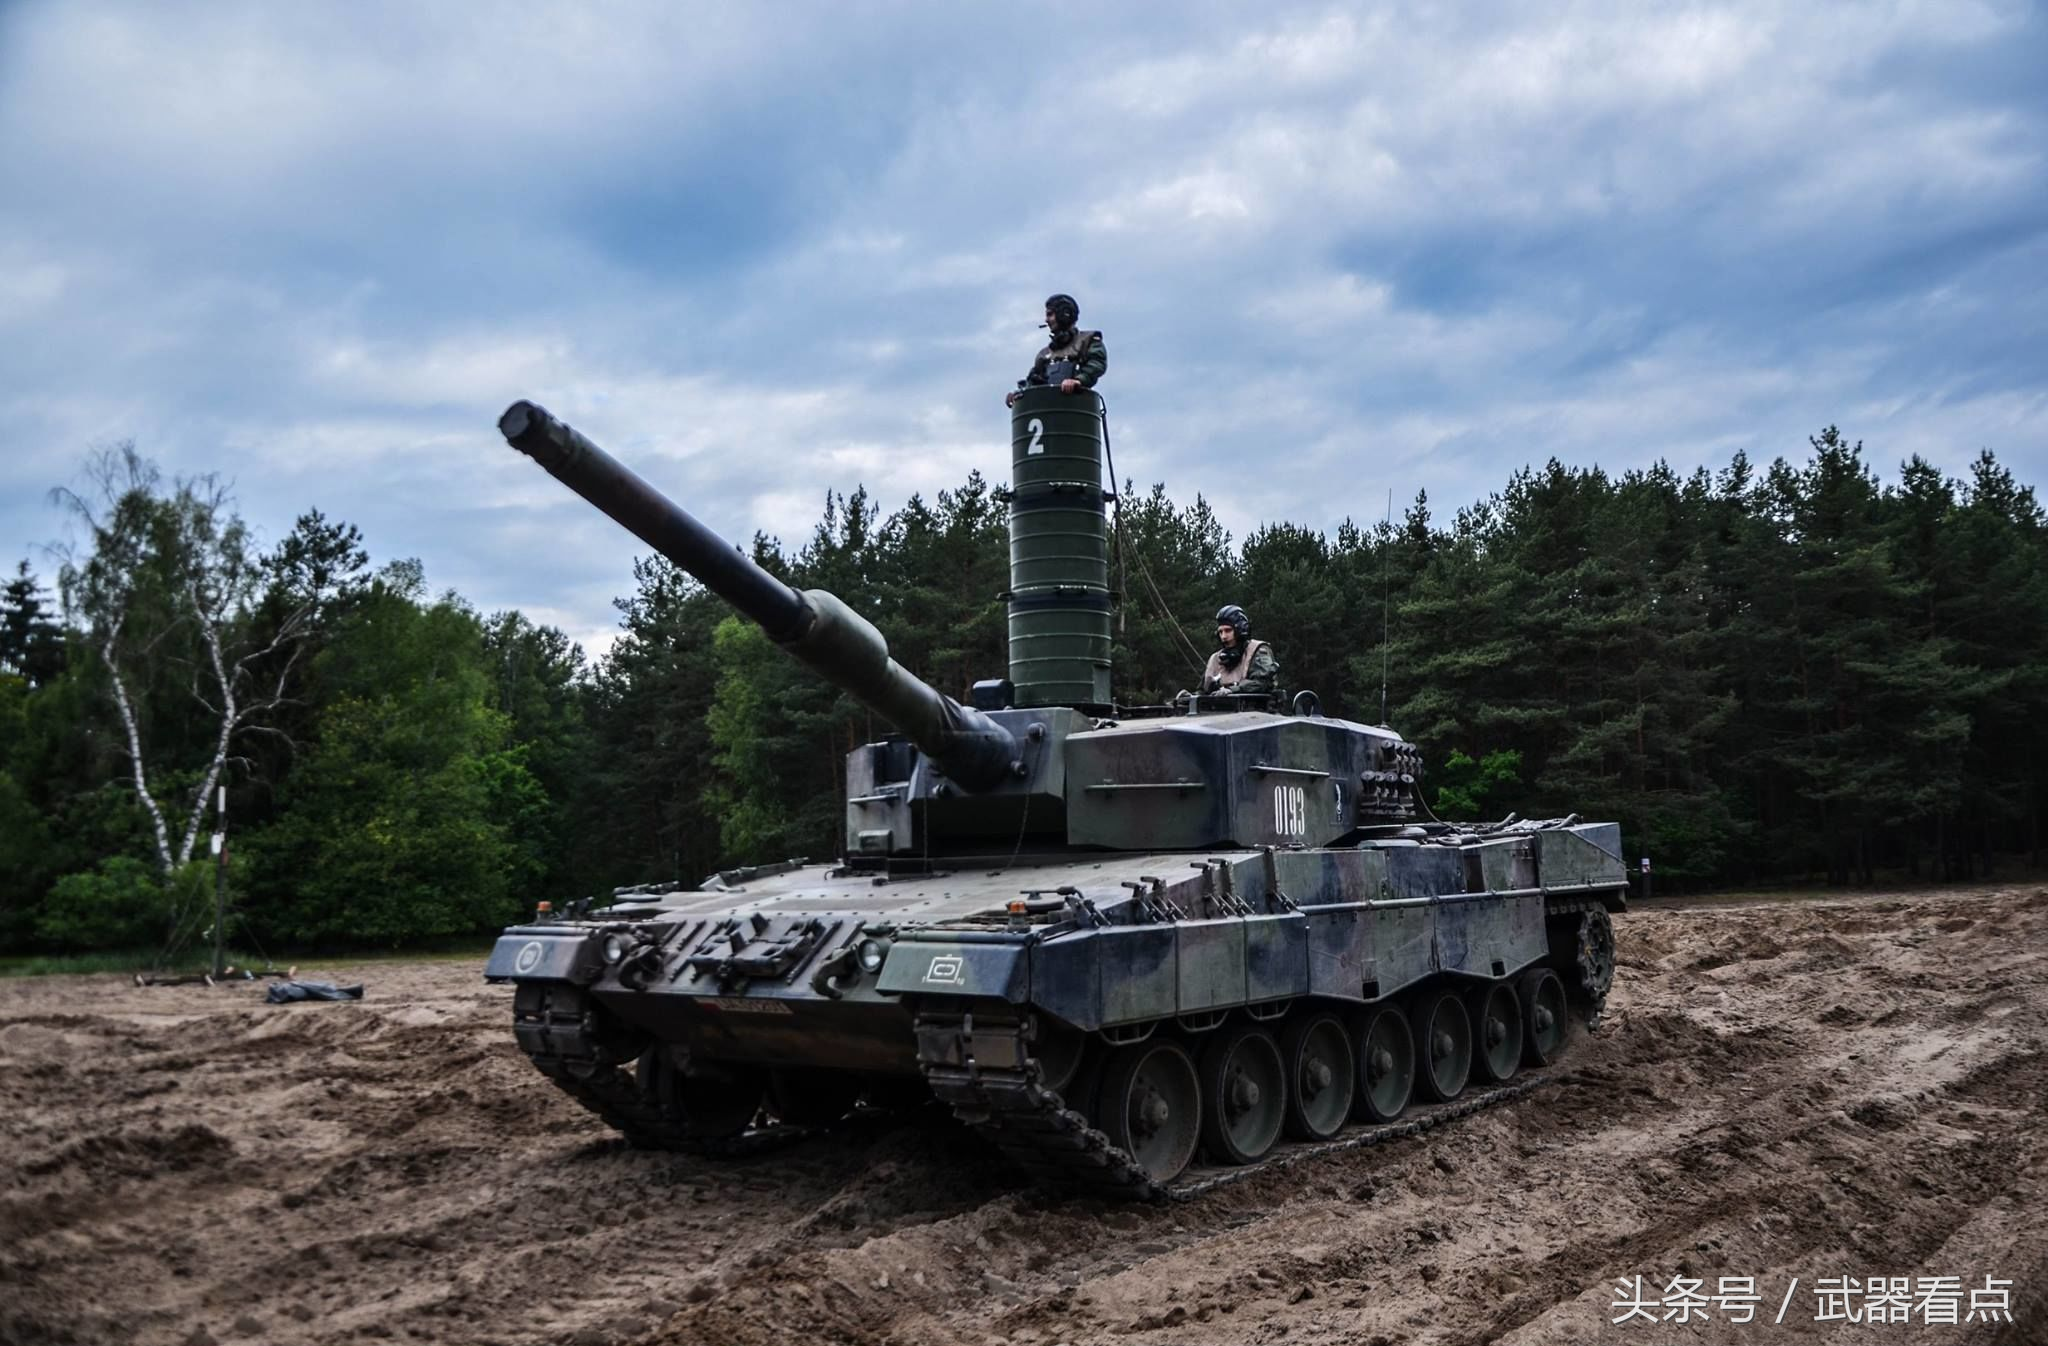 豹2 系列 主战坦克——高清相片